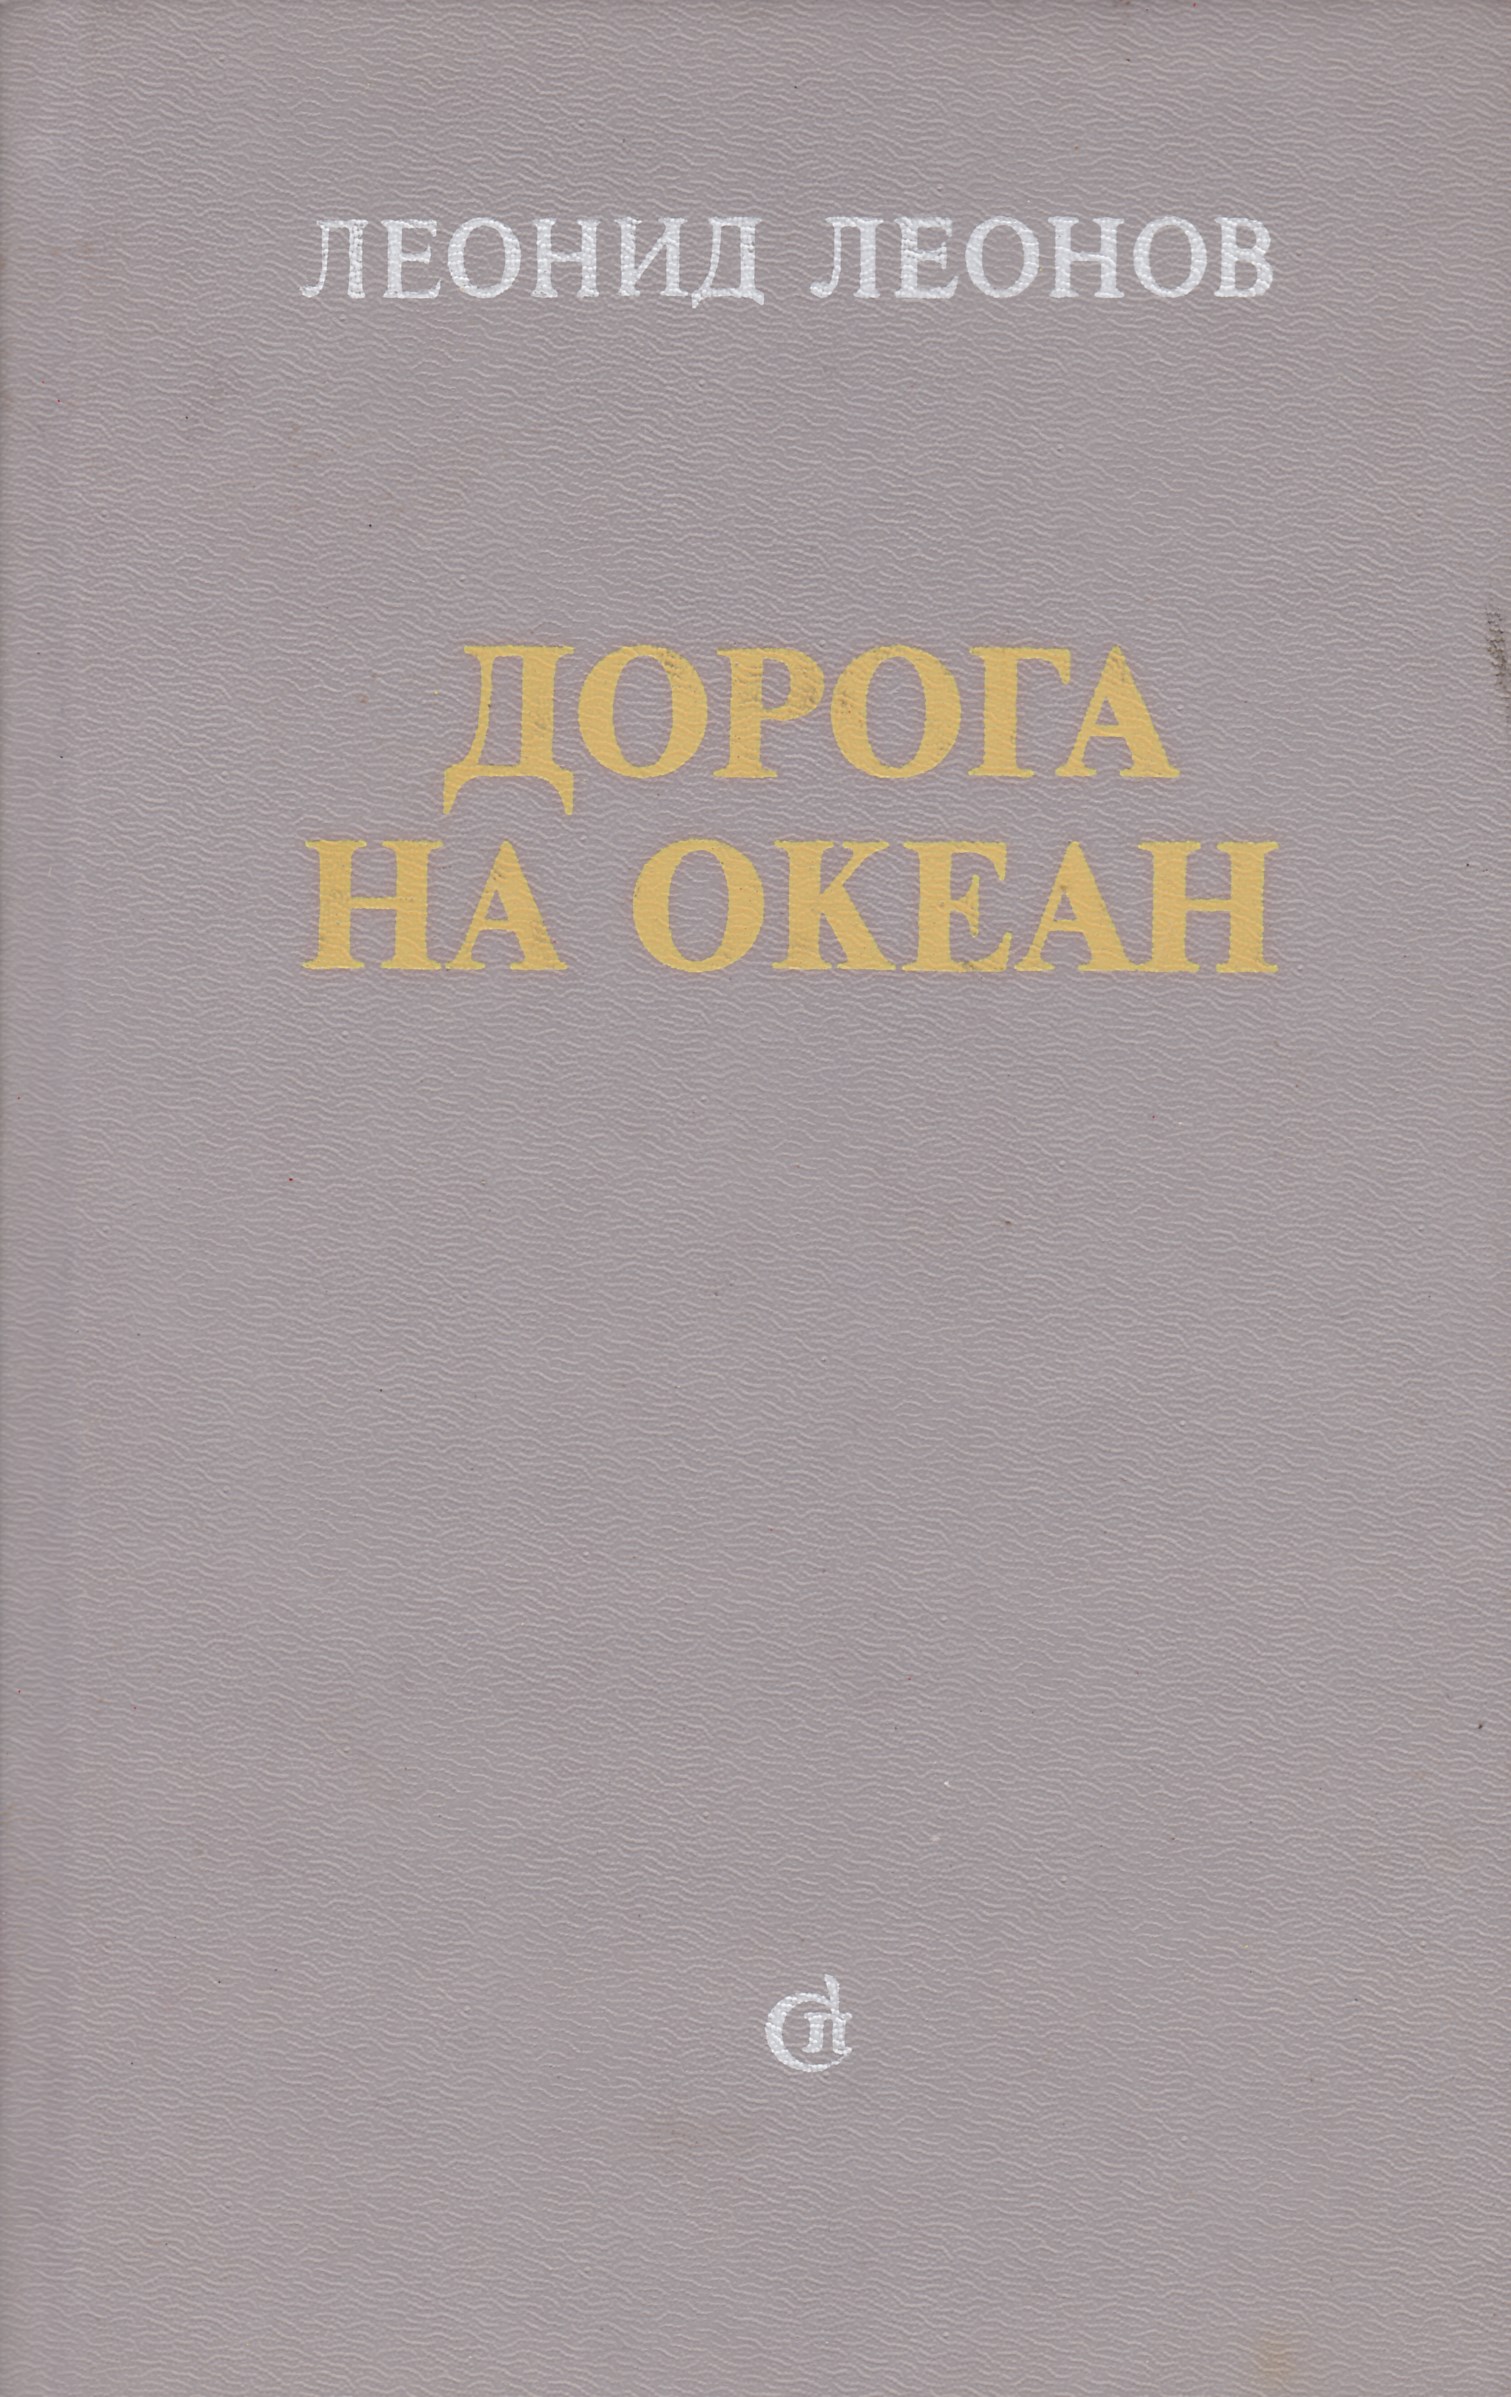 Леонид Леонов книги